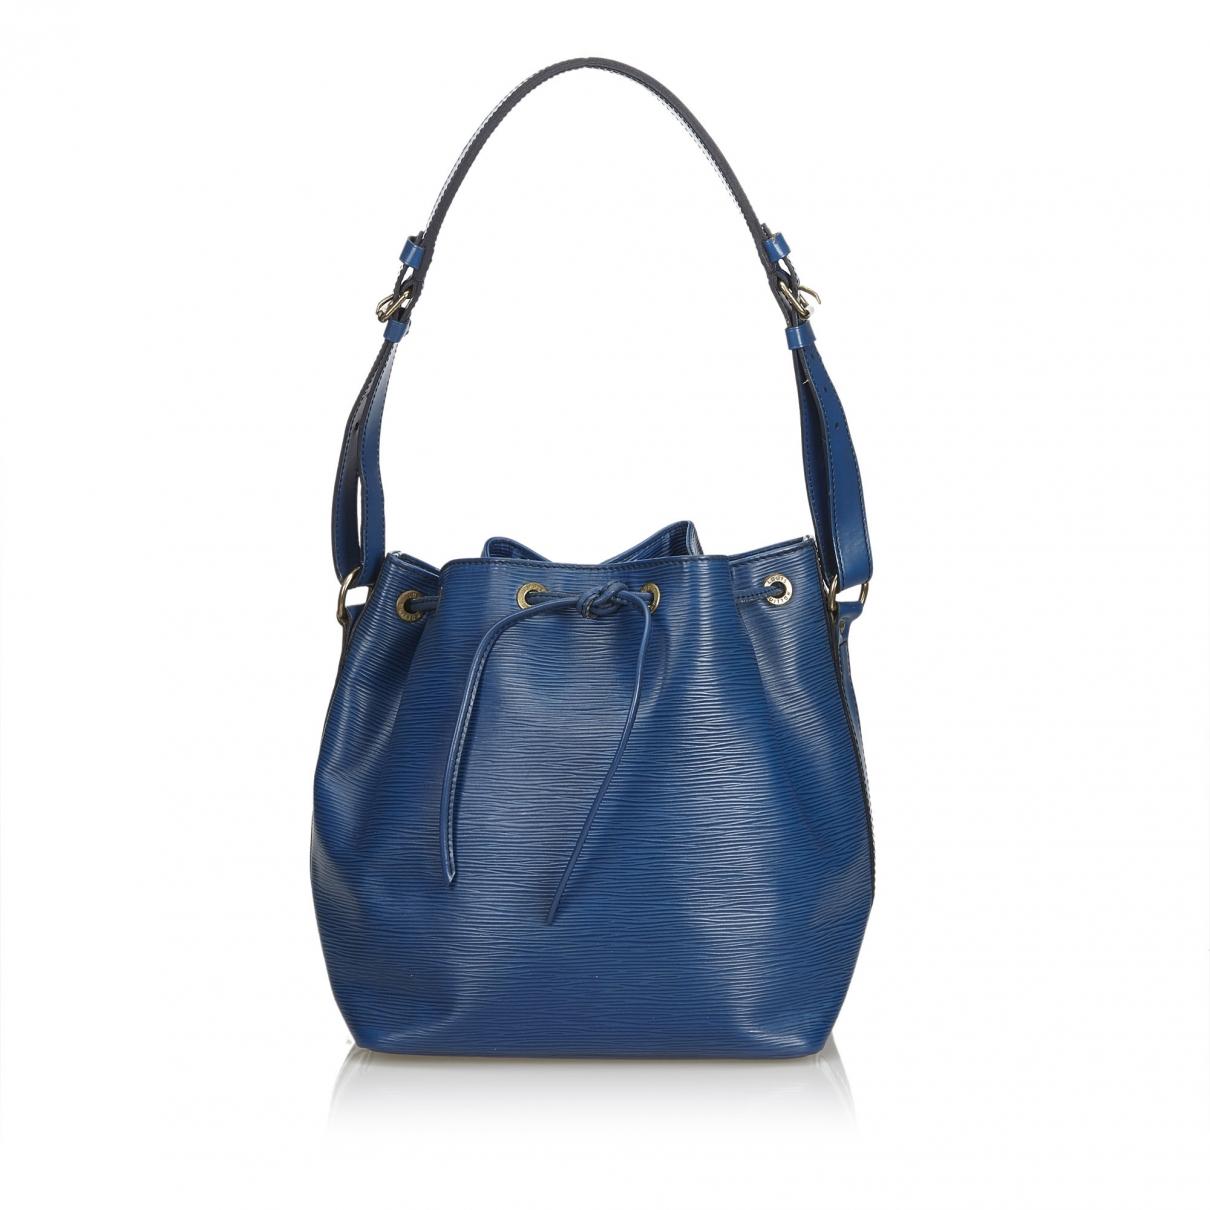 Lyst - Louis Vuitton Noé Leather Handbag in Blue